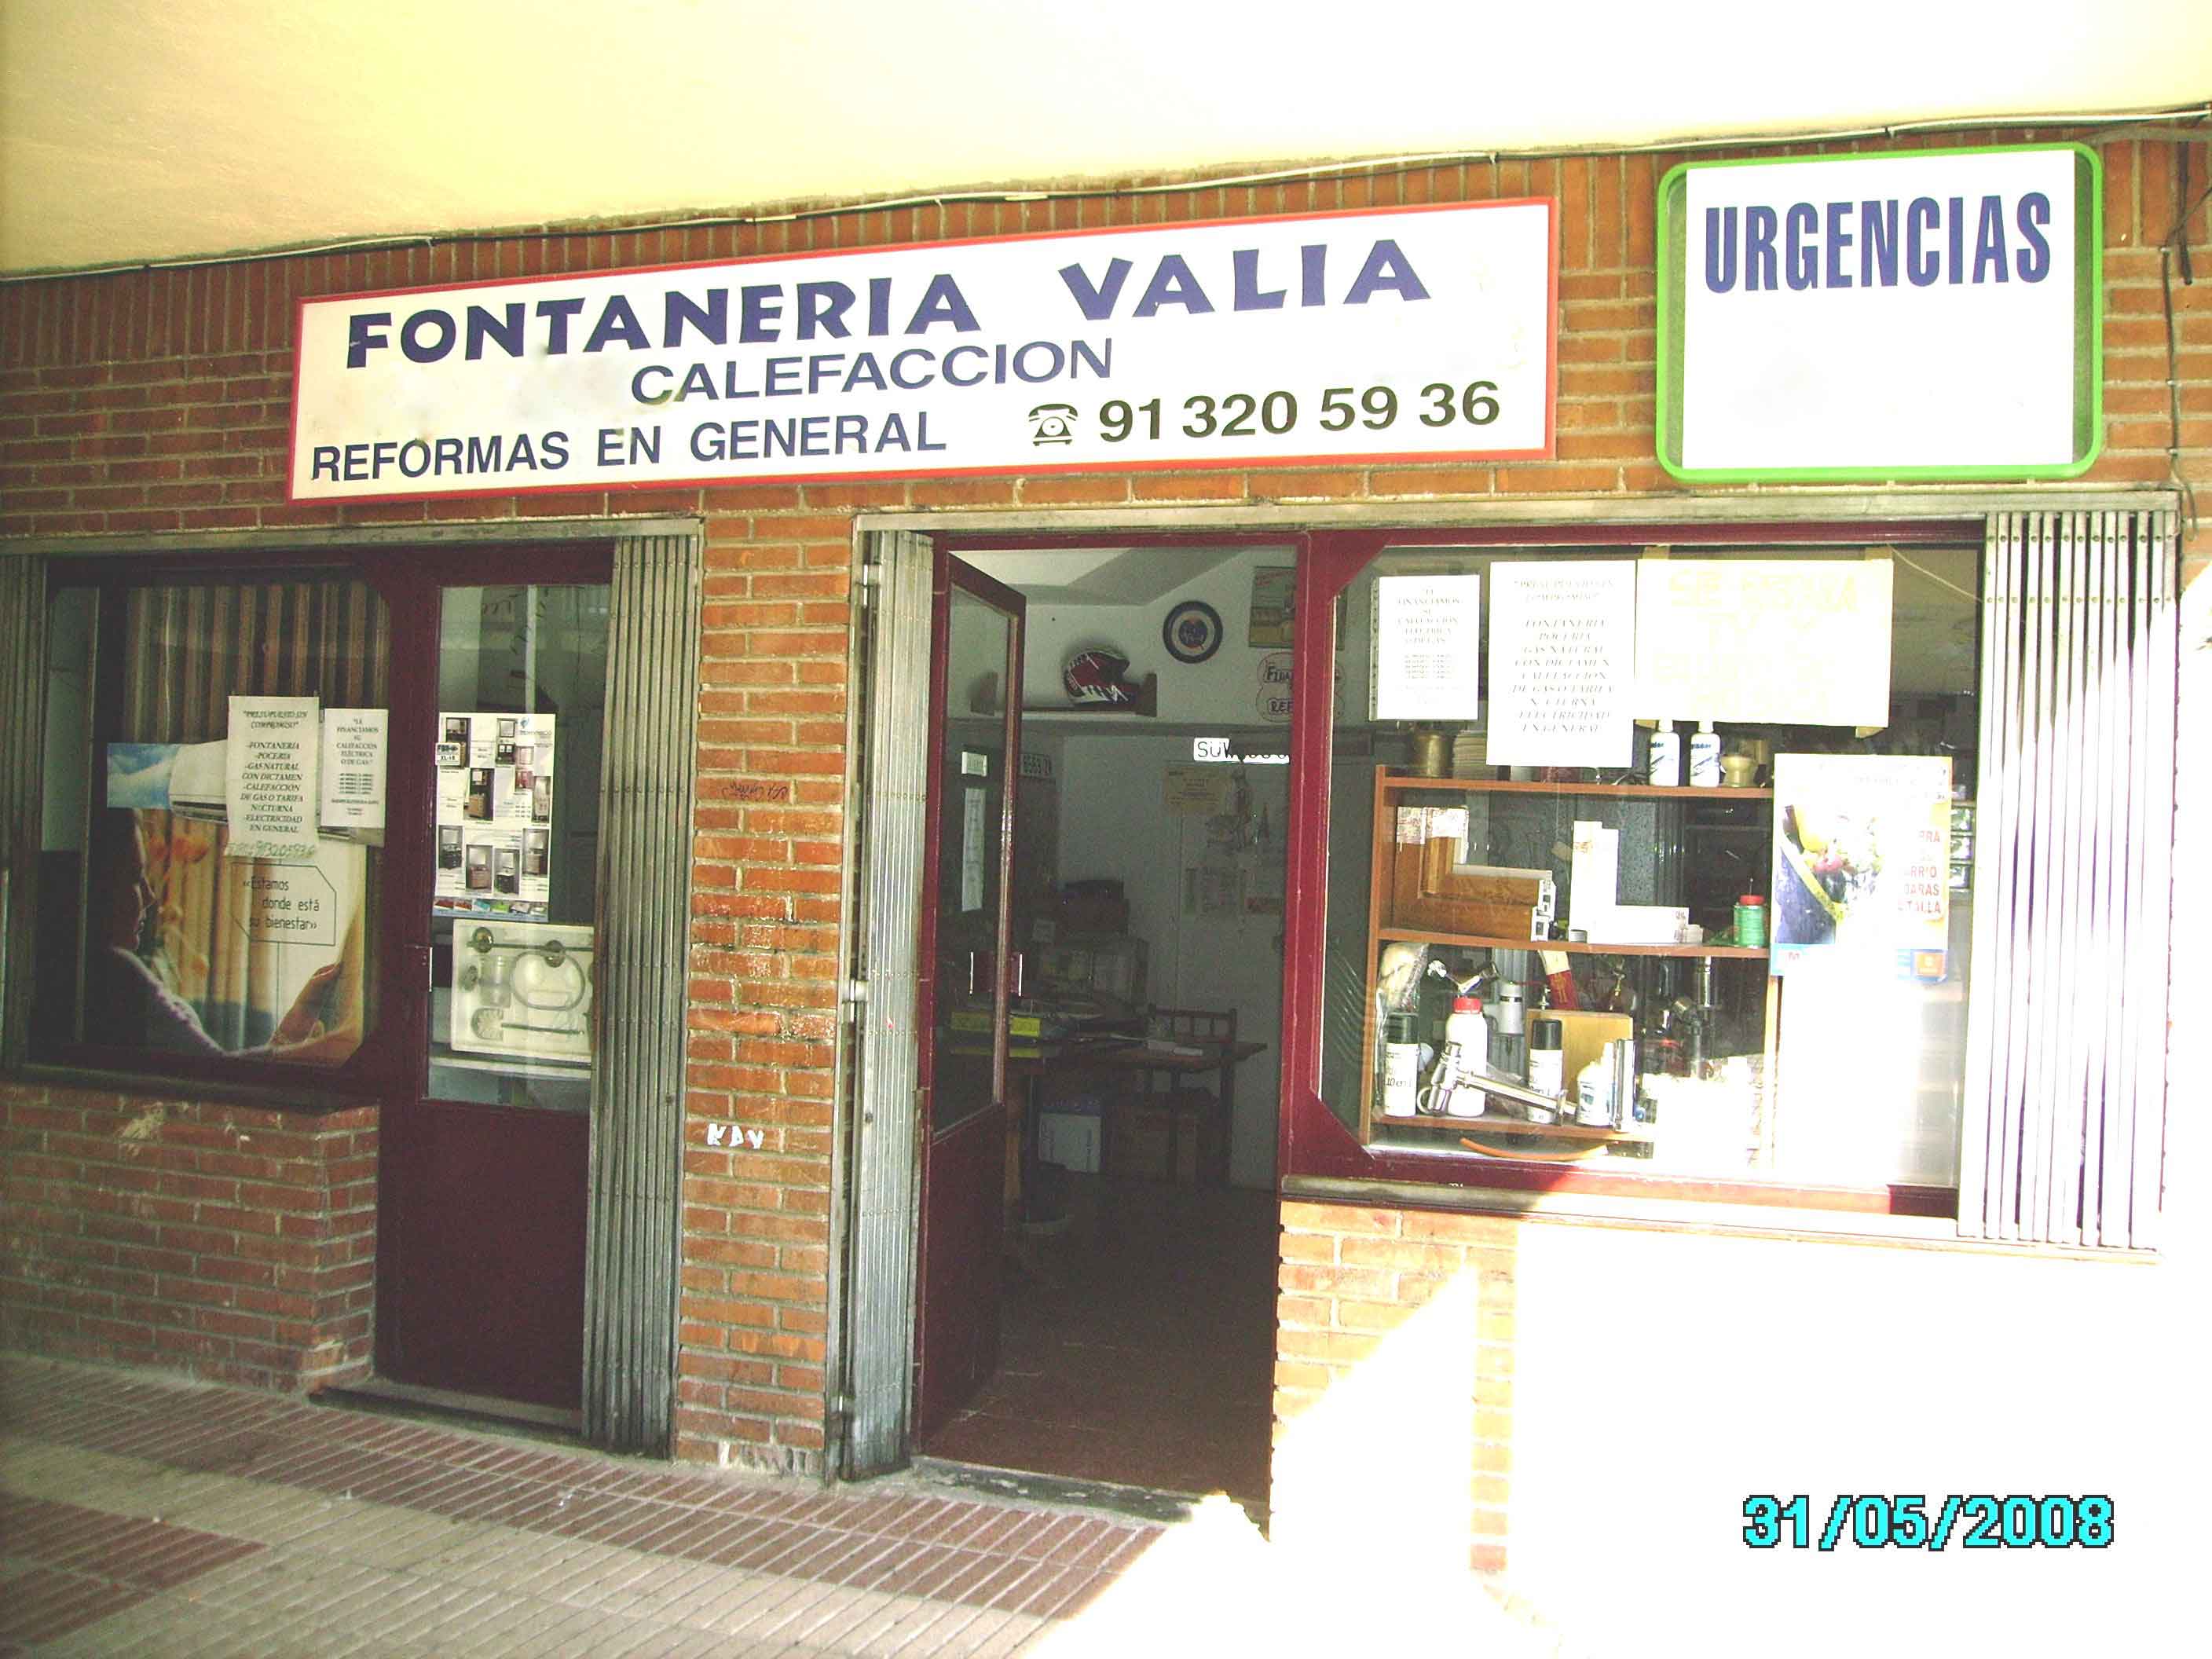 TIENDA DE FONTNAERIA VALIA SAN BLAS MADRID